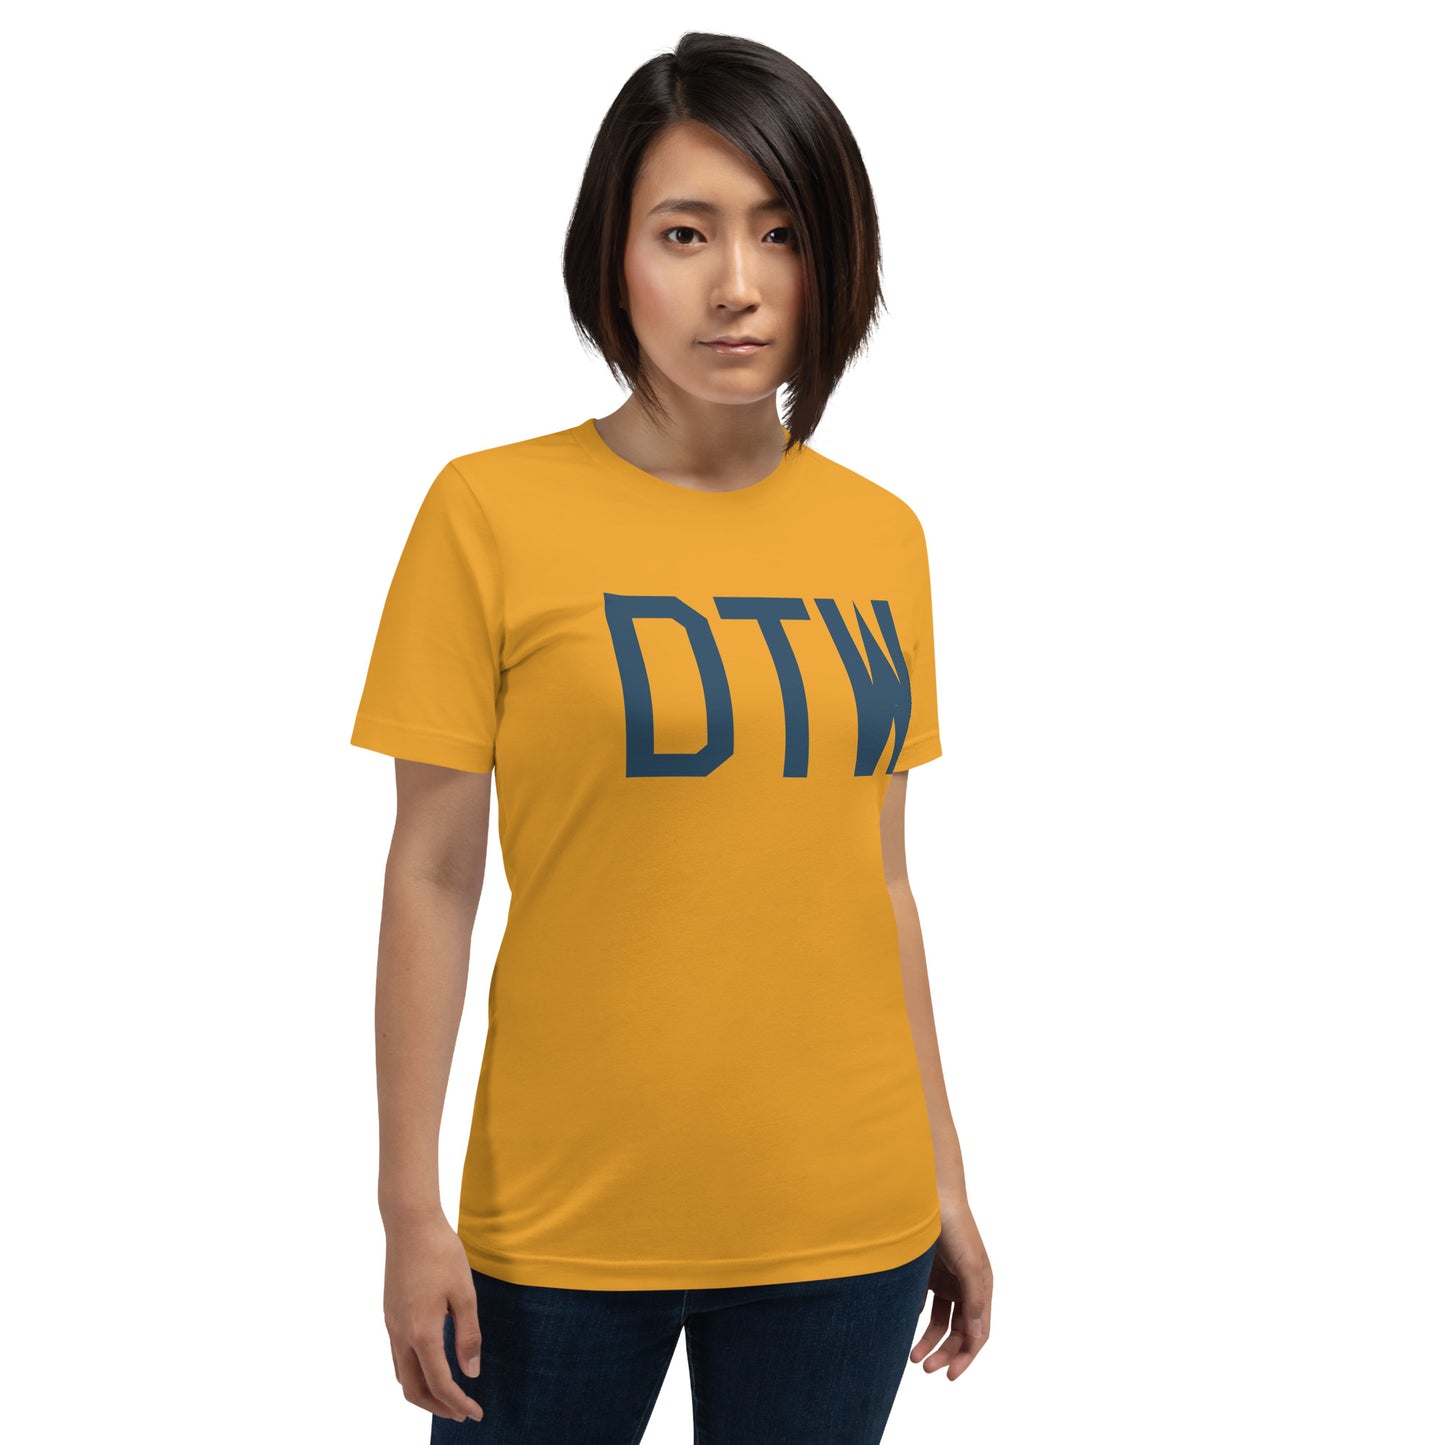 Aviation Lover Unisex T-Shirt - Blue Graphic • DTW Detroit • YHM Designs - Image 07